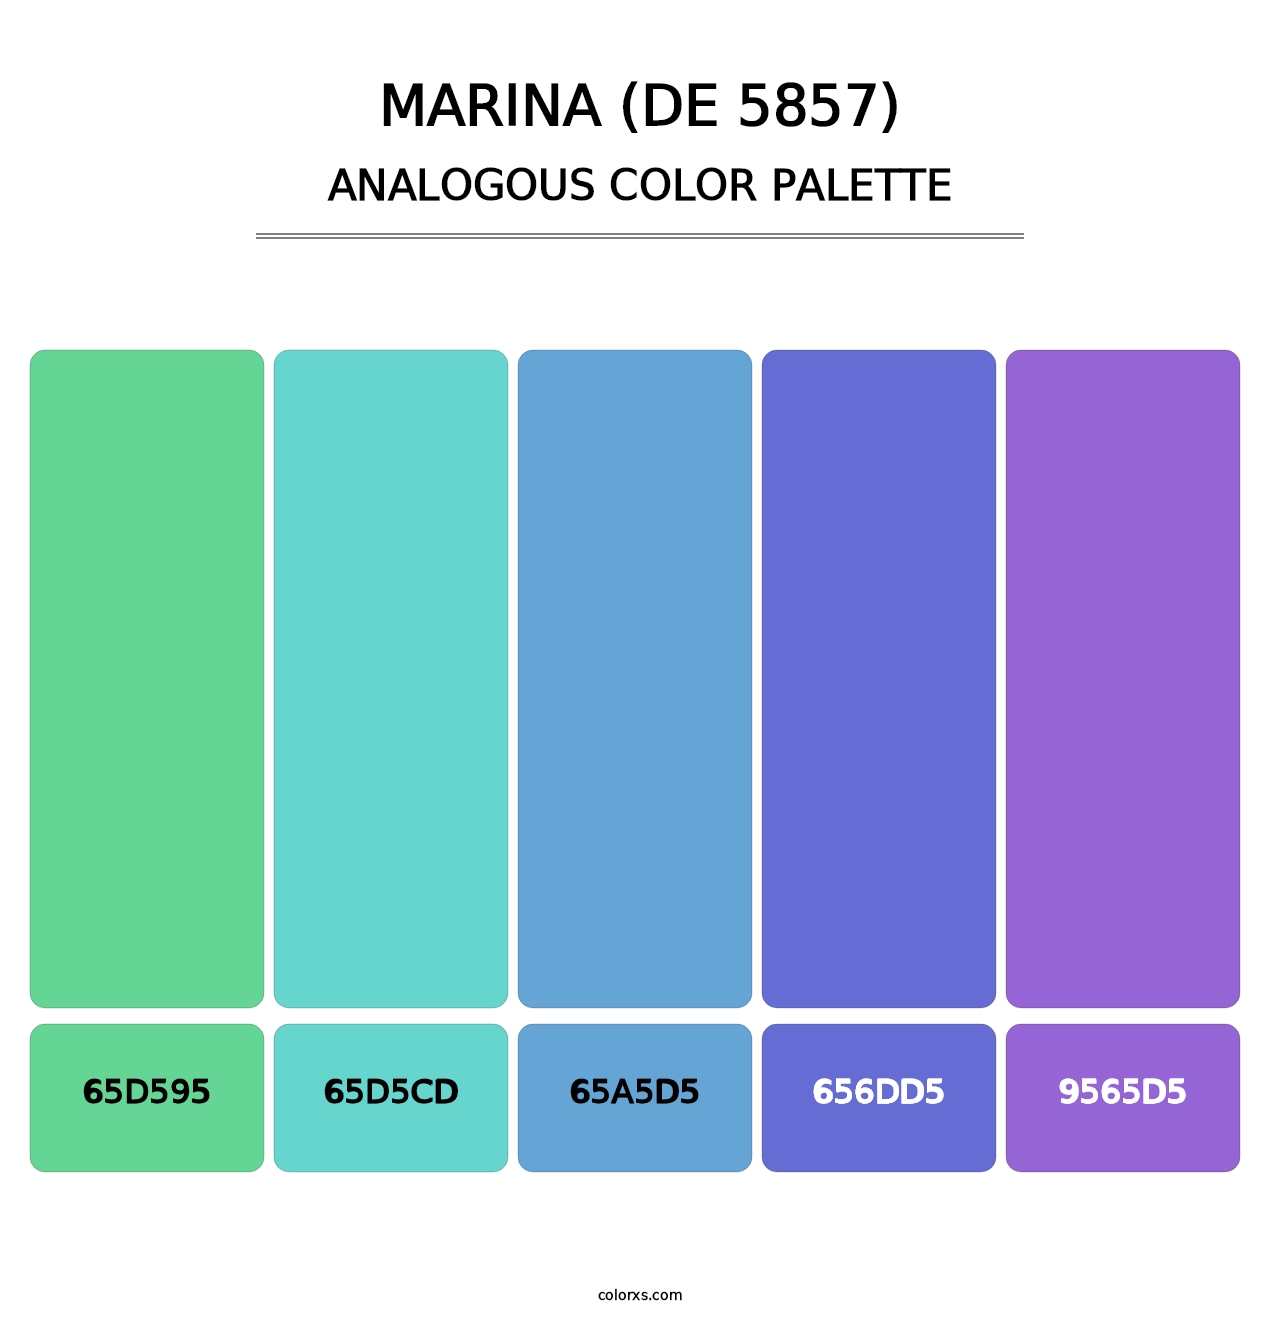 Marina (DE 5857) - Analogous Color Palette